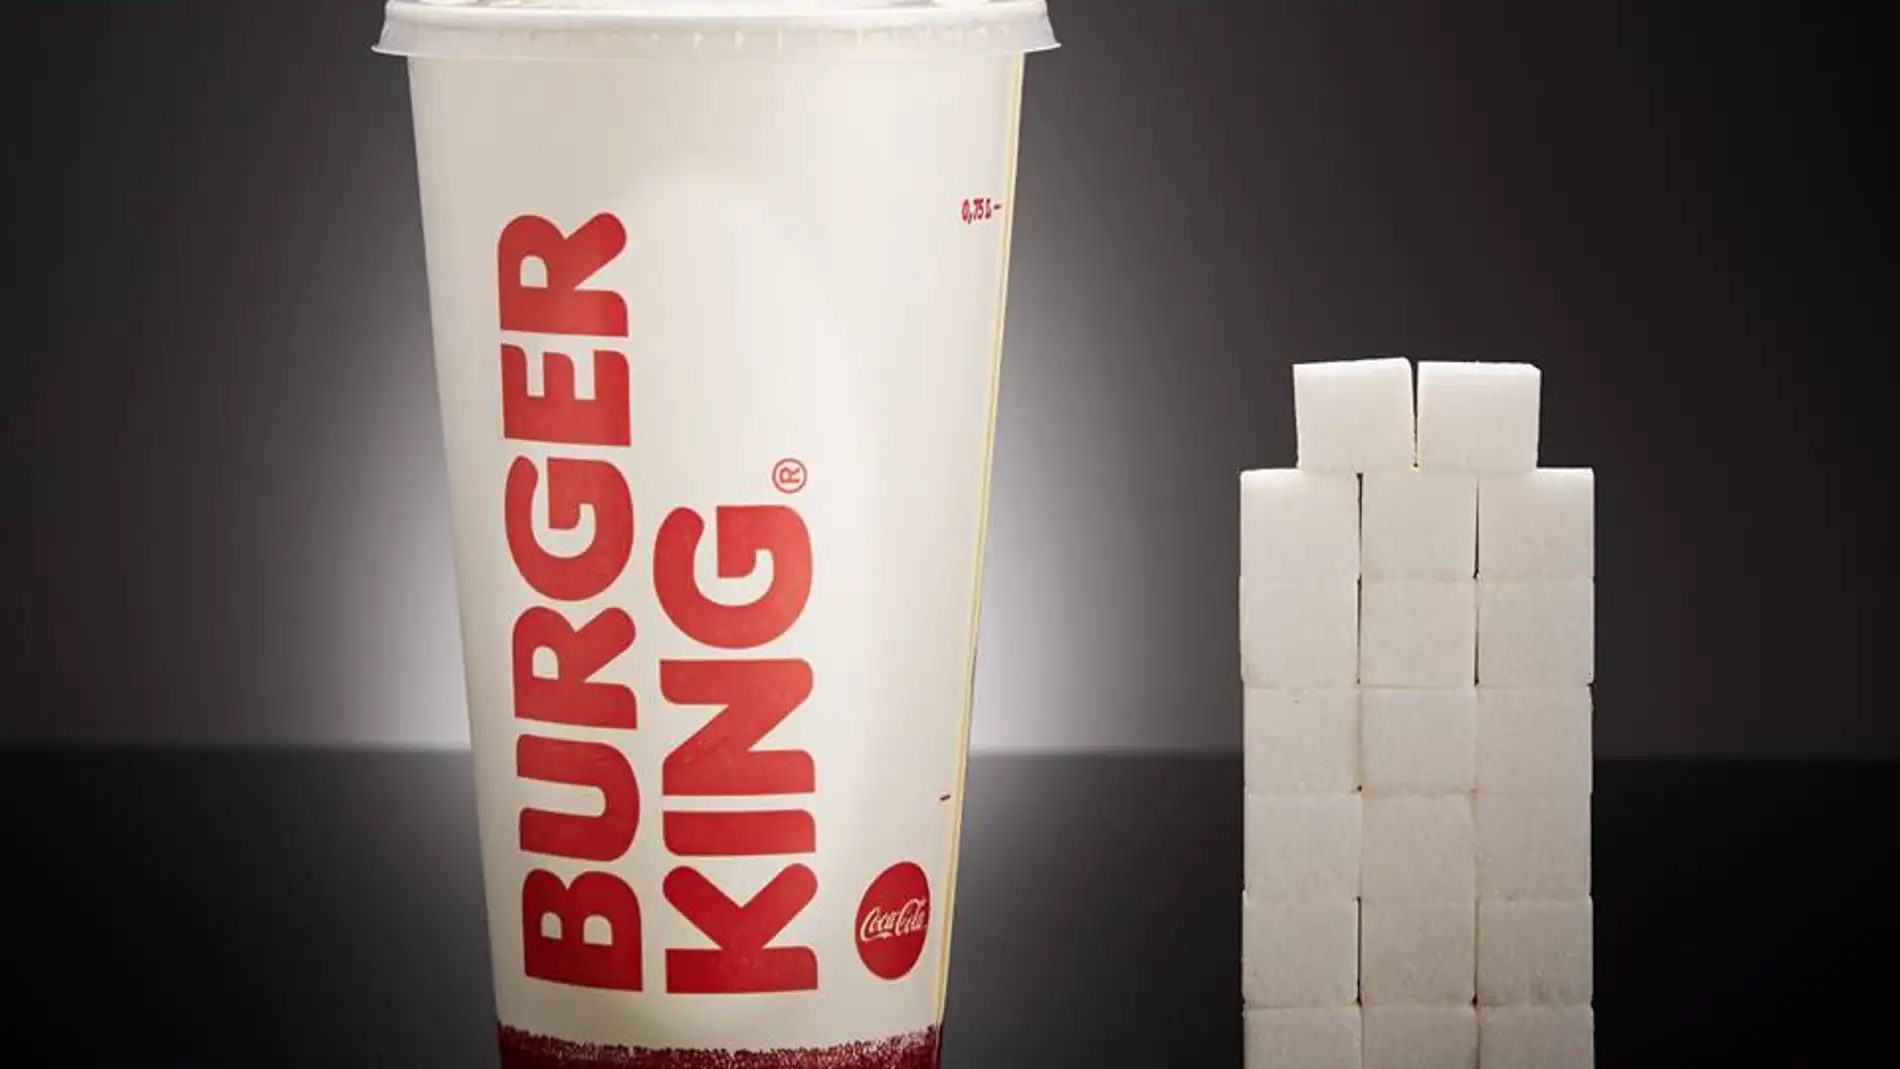 Un vaso de Coca-Cola Gigante del Burguer King (700ml) contiene 79,5g de azúcar, equivalente a 19,8 terrones.